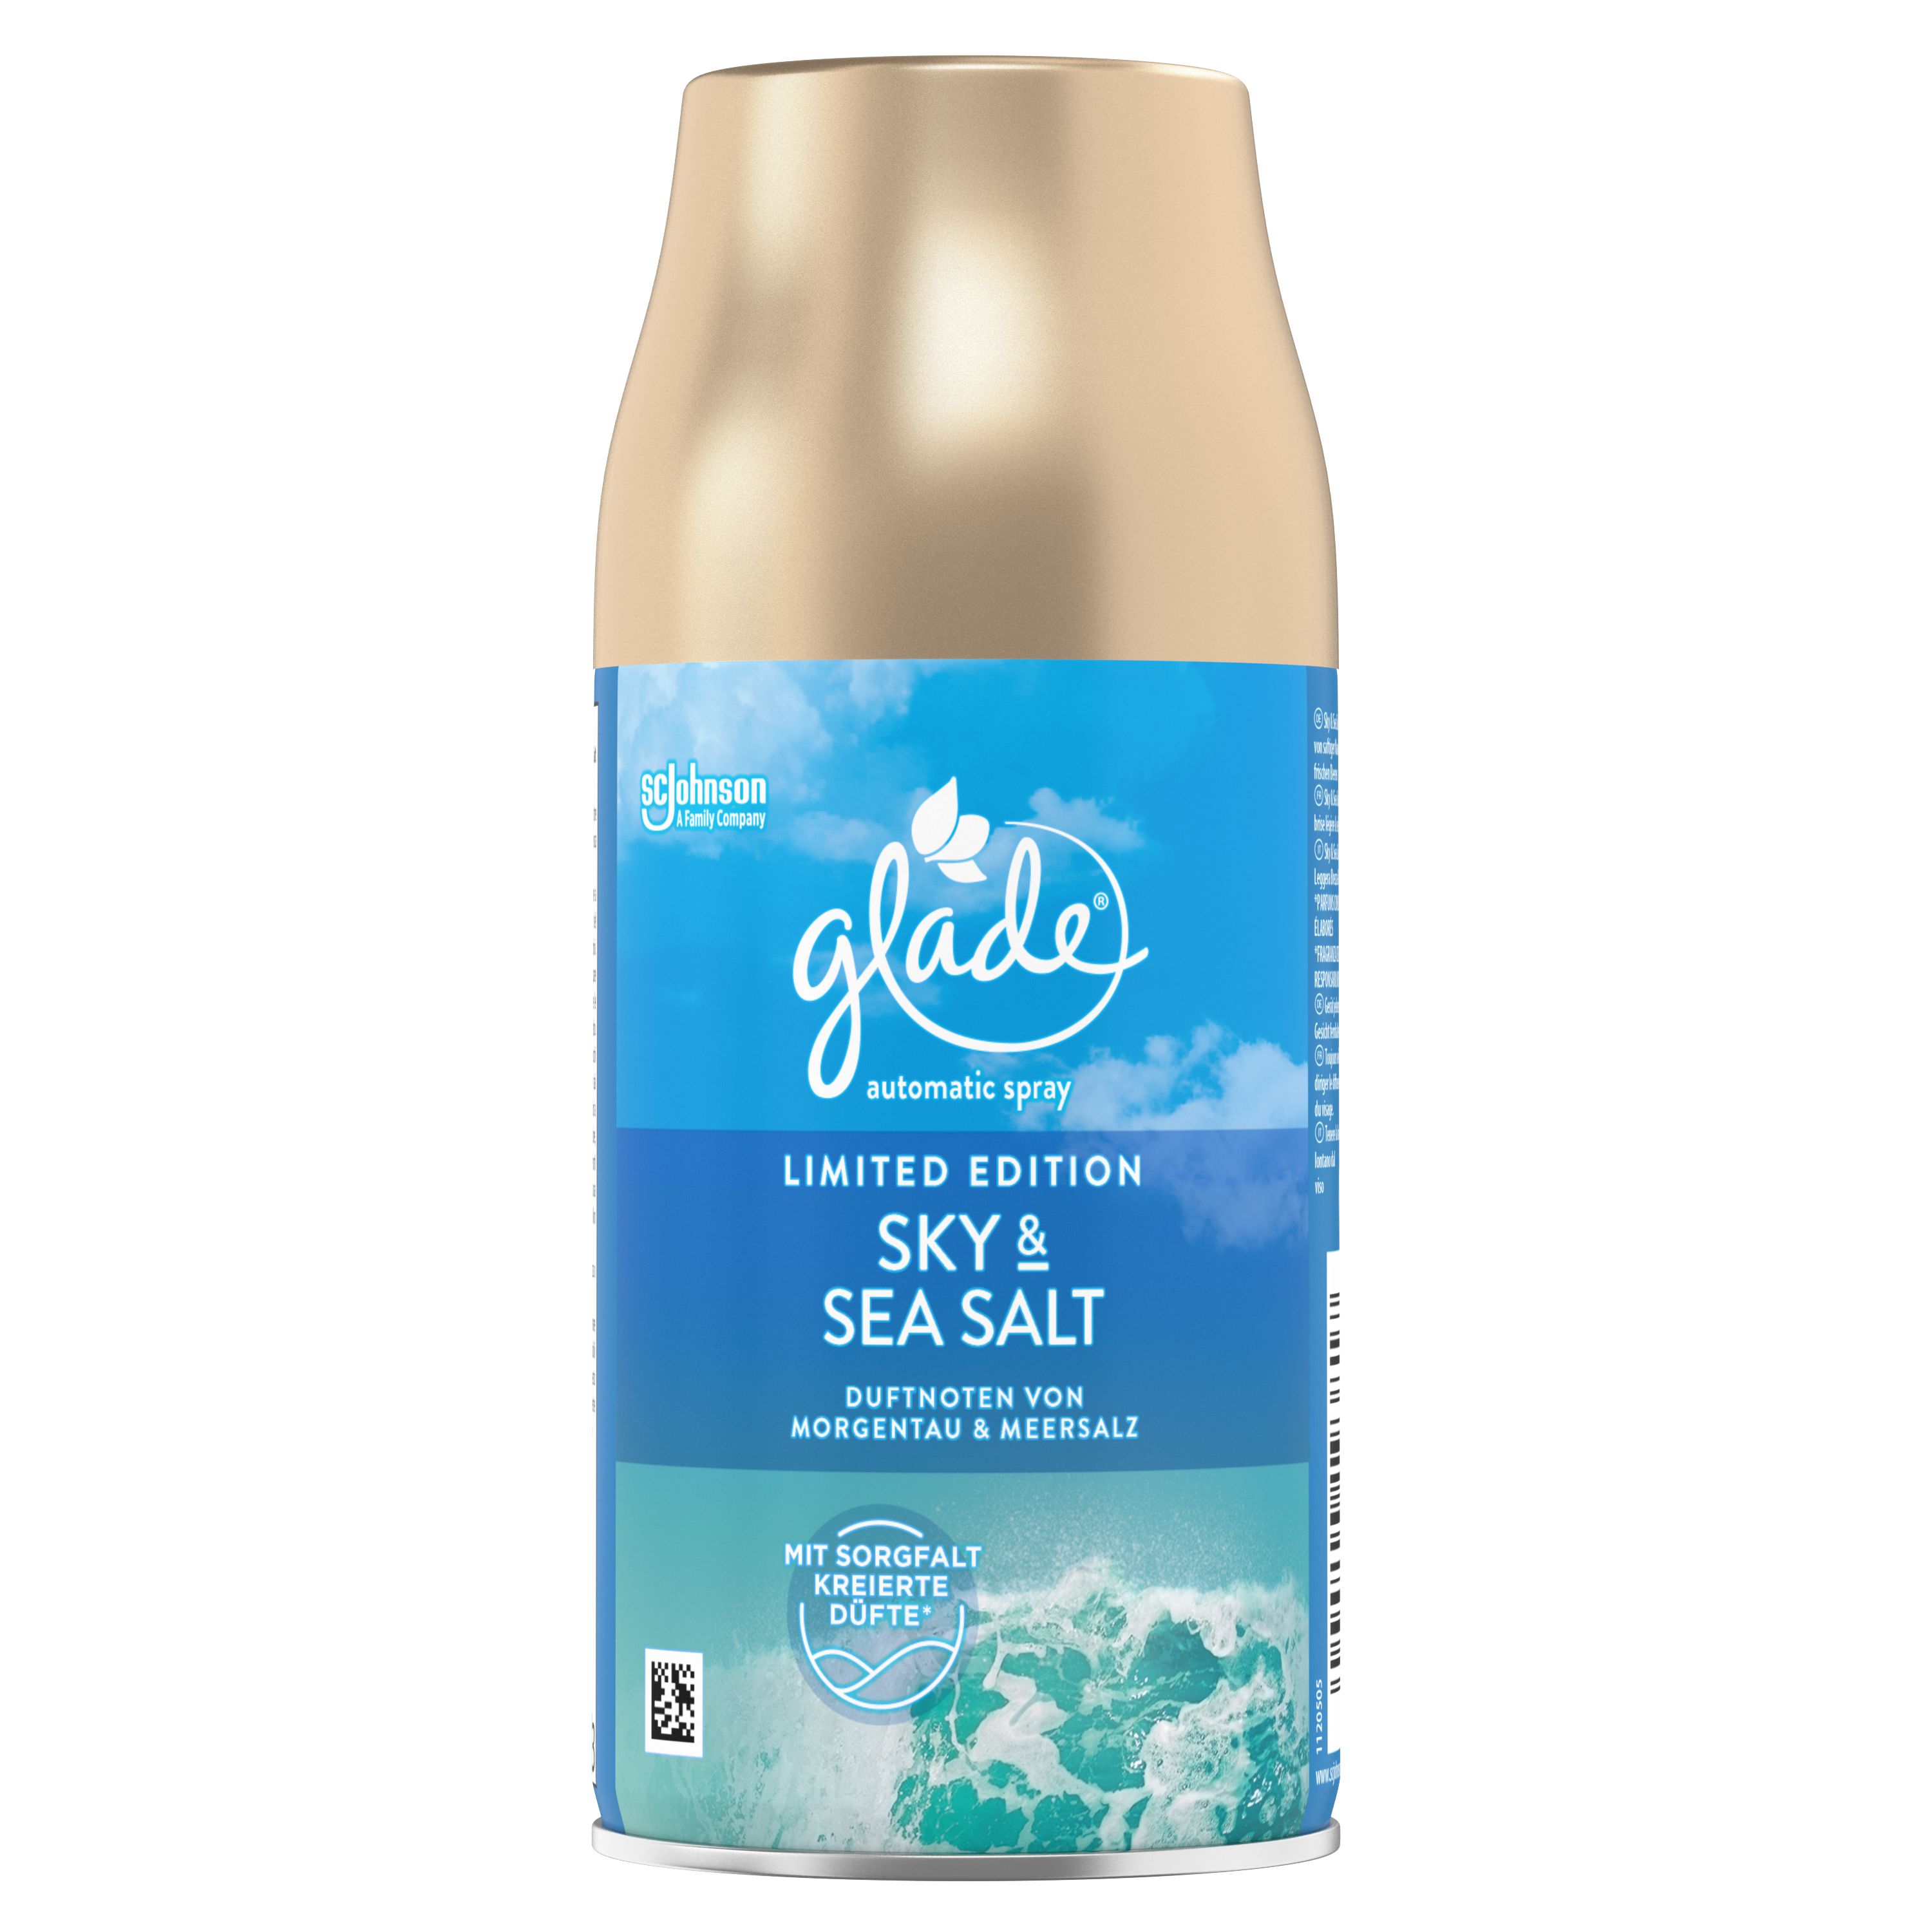 Glade® Automatic Spray Ricarica Sky & Sea Salt